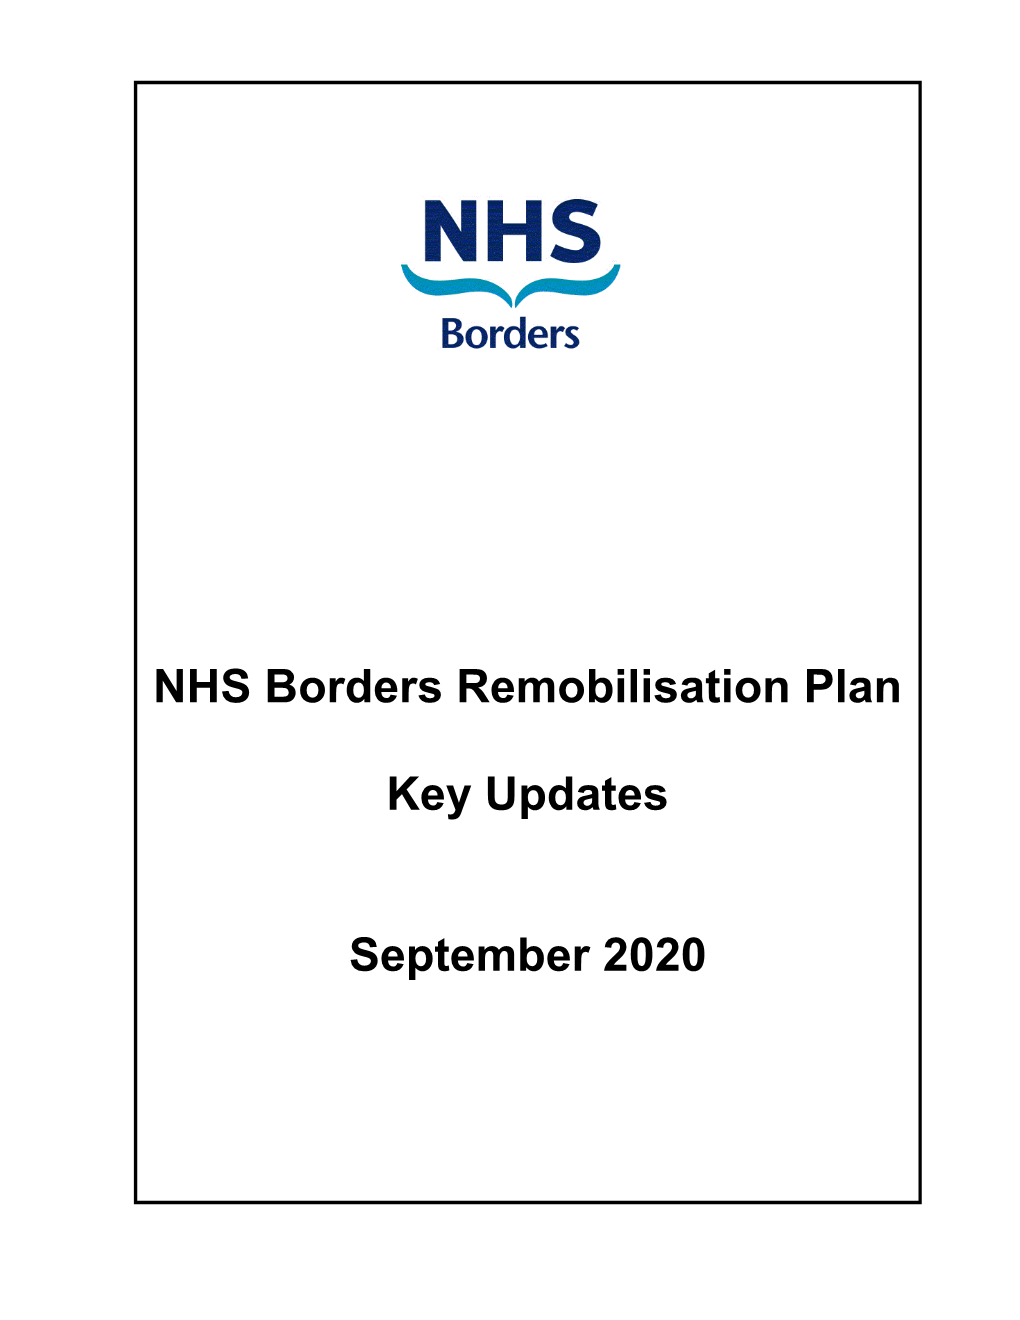 NHS Borders Remobilisation Plan Key Updates September 2020